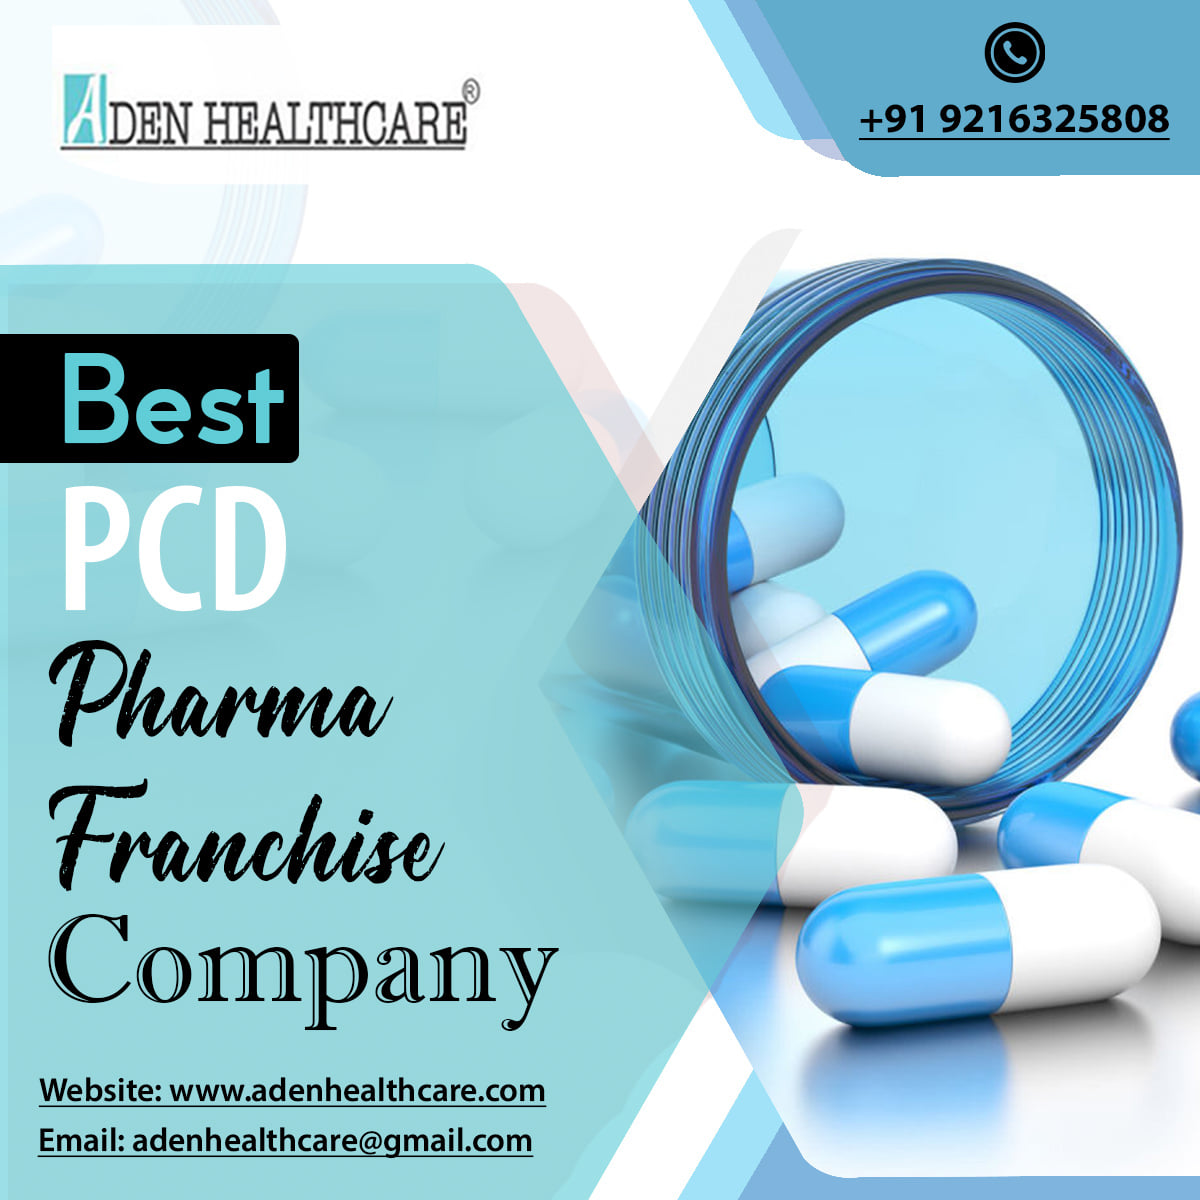 PCD Pharma Franchise in Vadodara